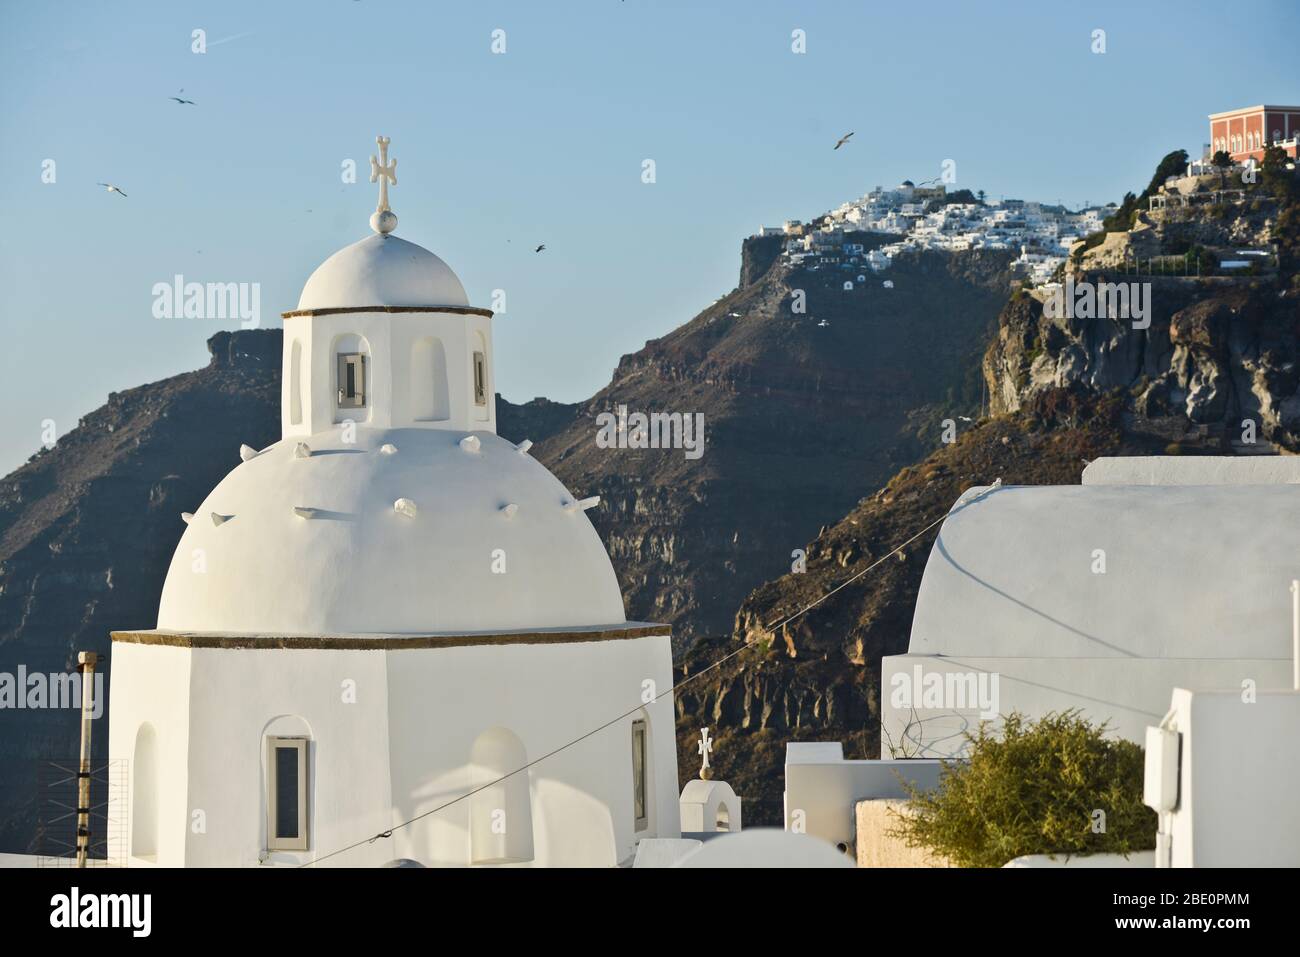 White dome church in Fira, Santorini, Greece Stock Photo